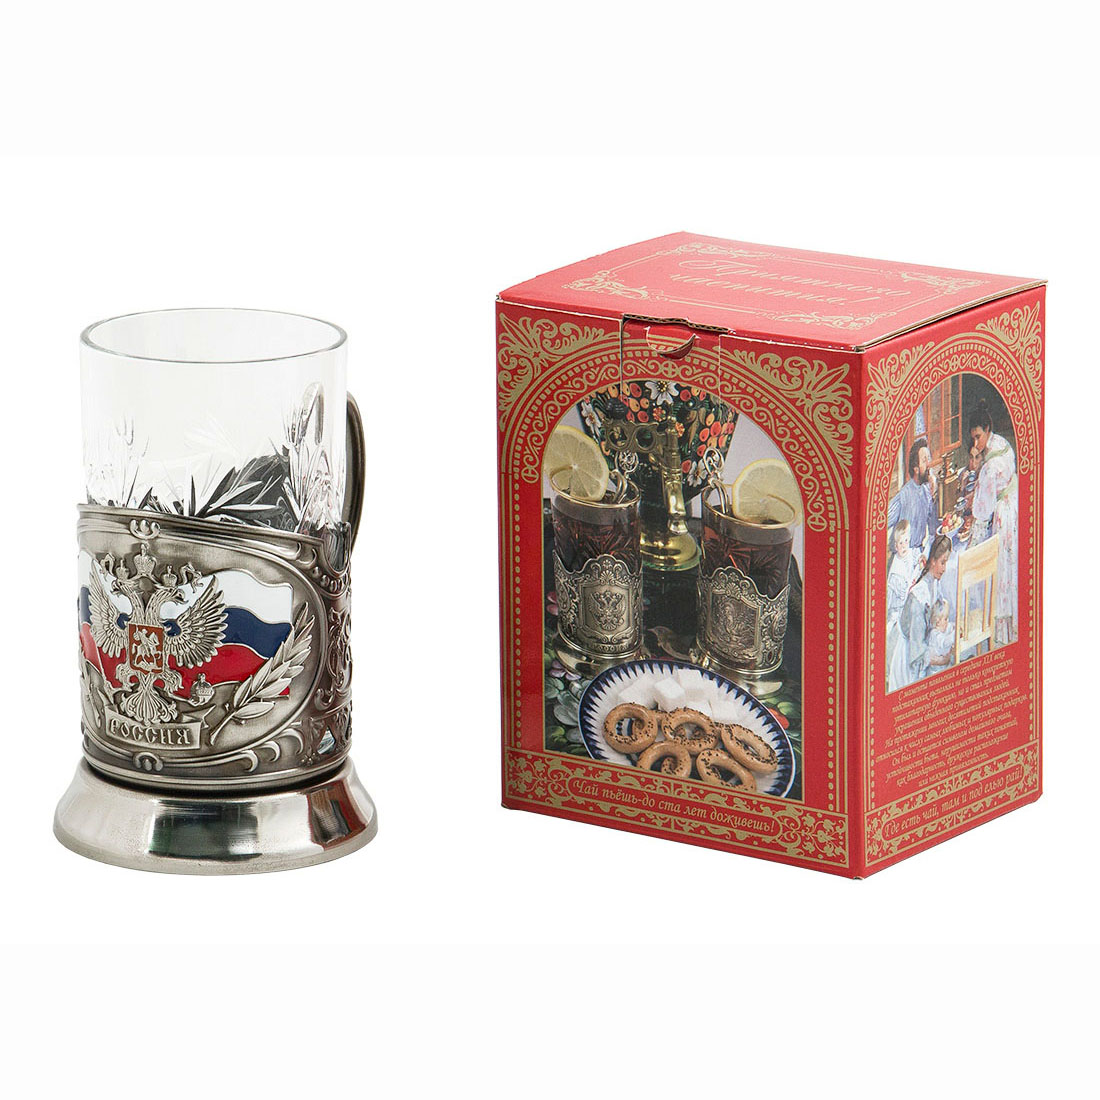 Подстаканник "Герб России" - картон.коробка, хруст.стакан, штамп, цветные эмали